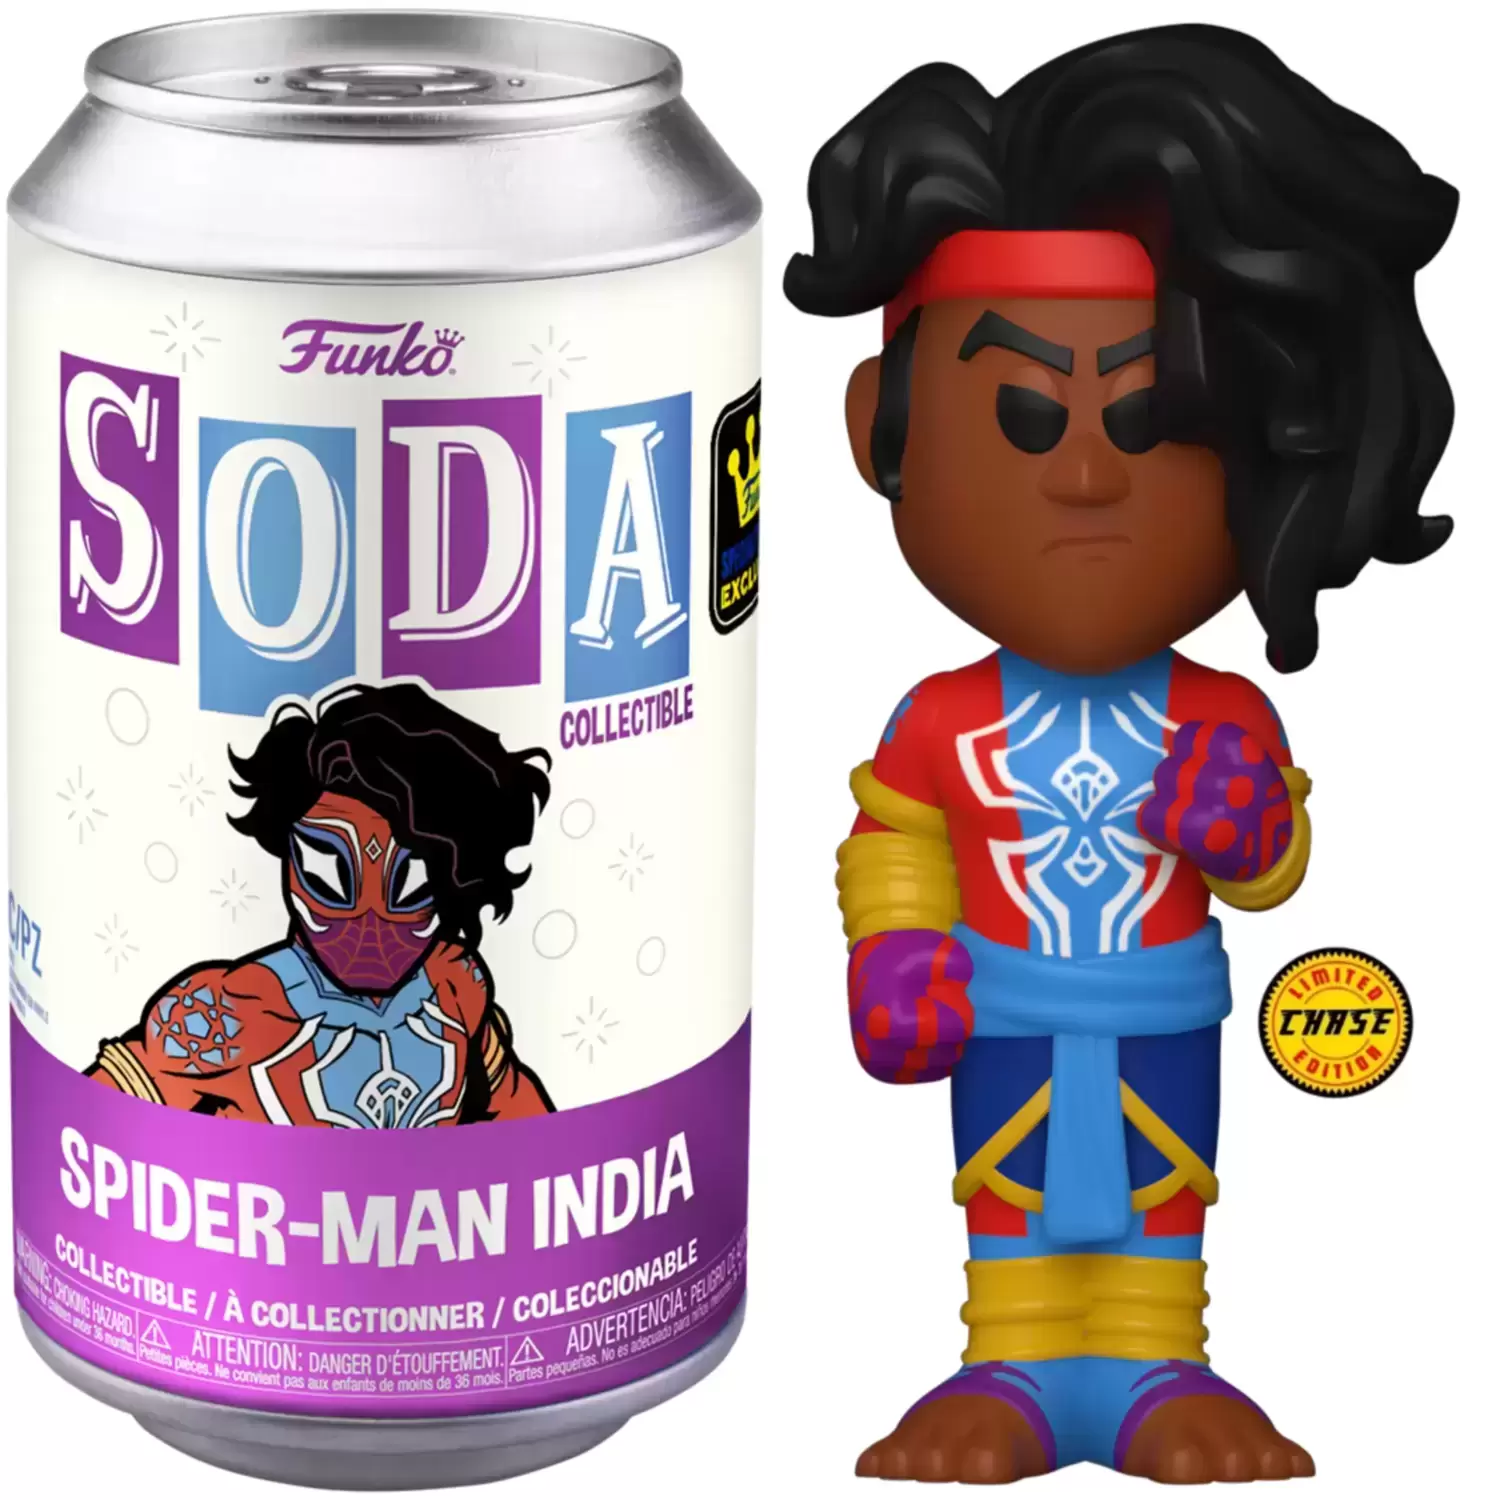 Vinyl Soda! - Spider-Man India Chase